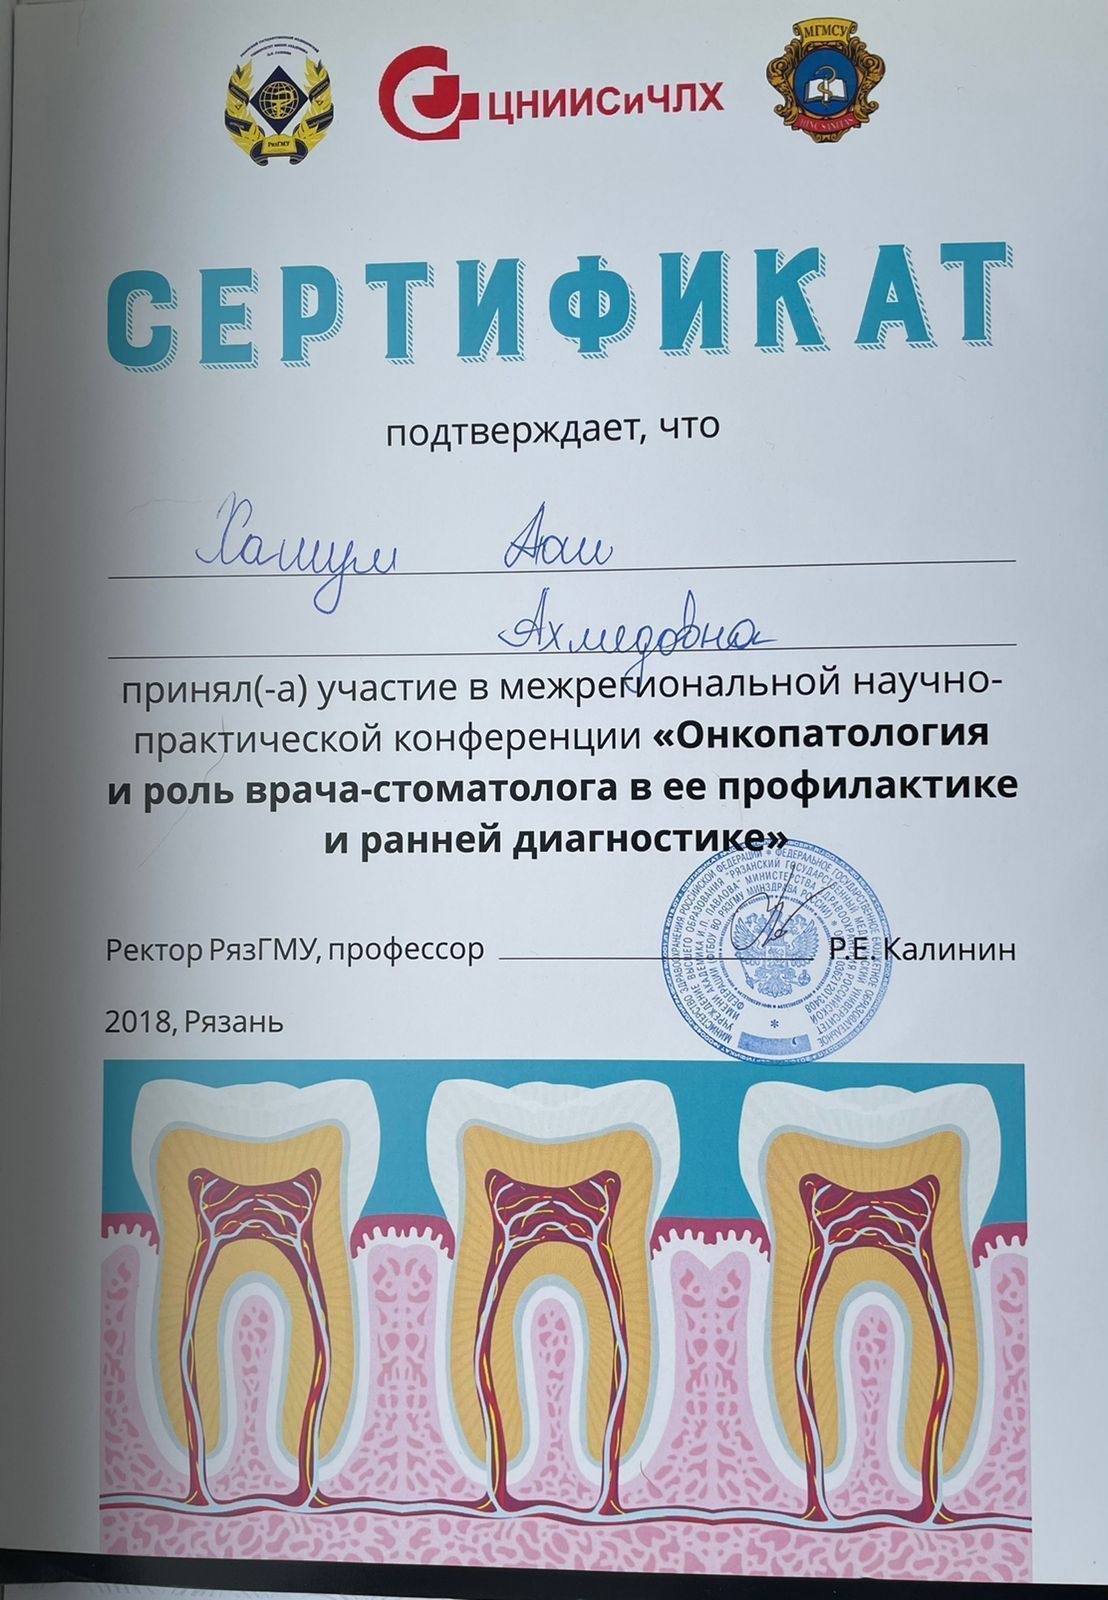 Сертификацы и лицензии Хашум Аюш Ахмедовна